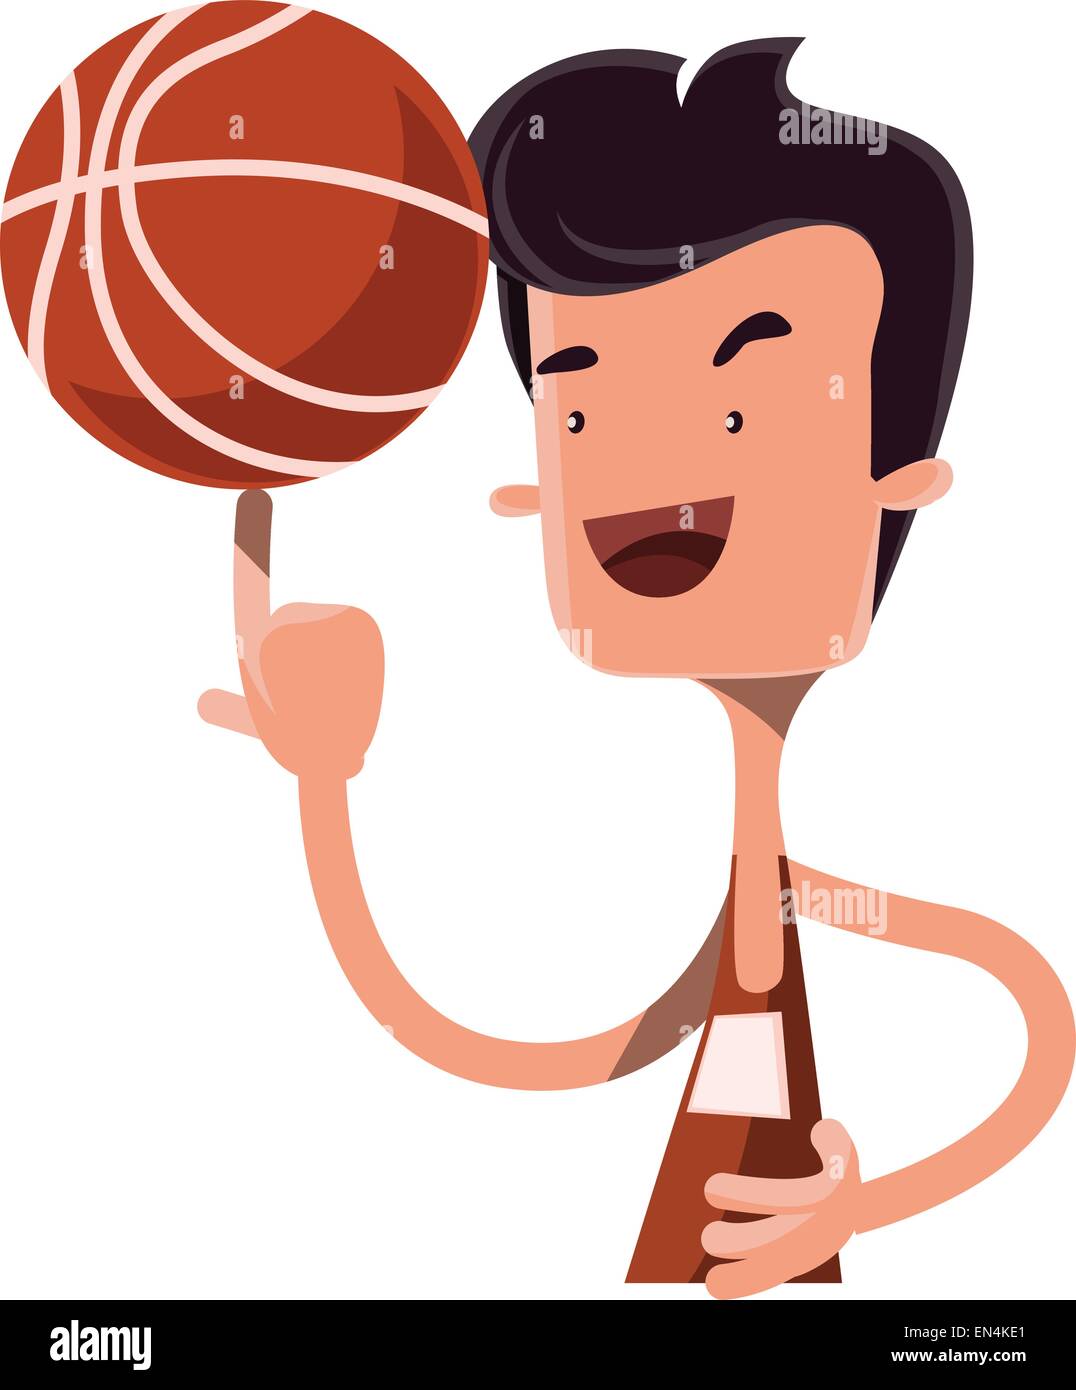 animated spinning basketball